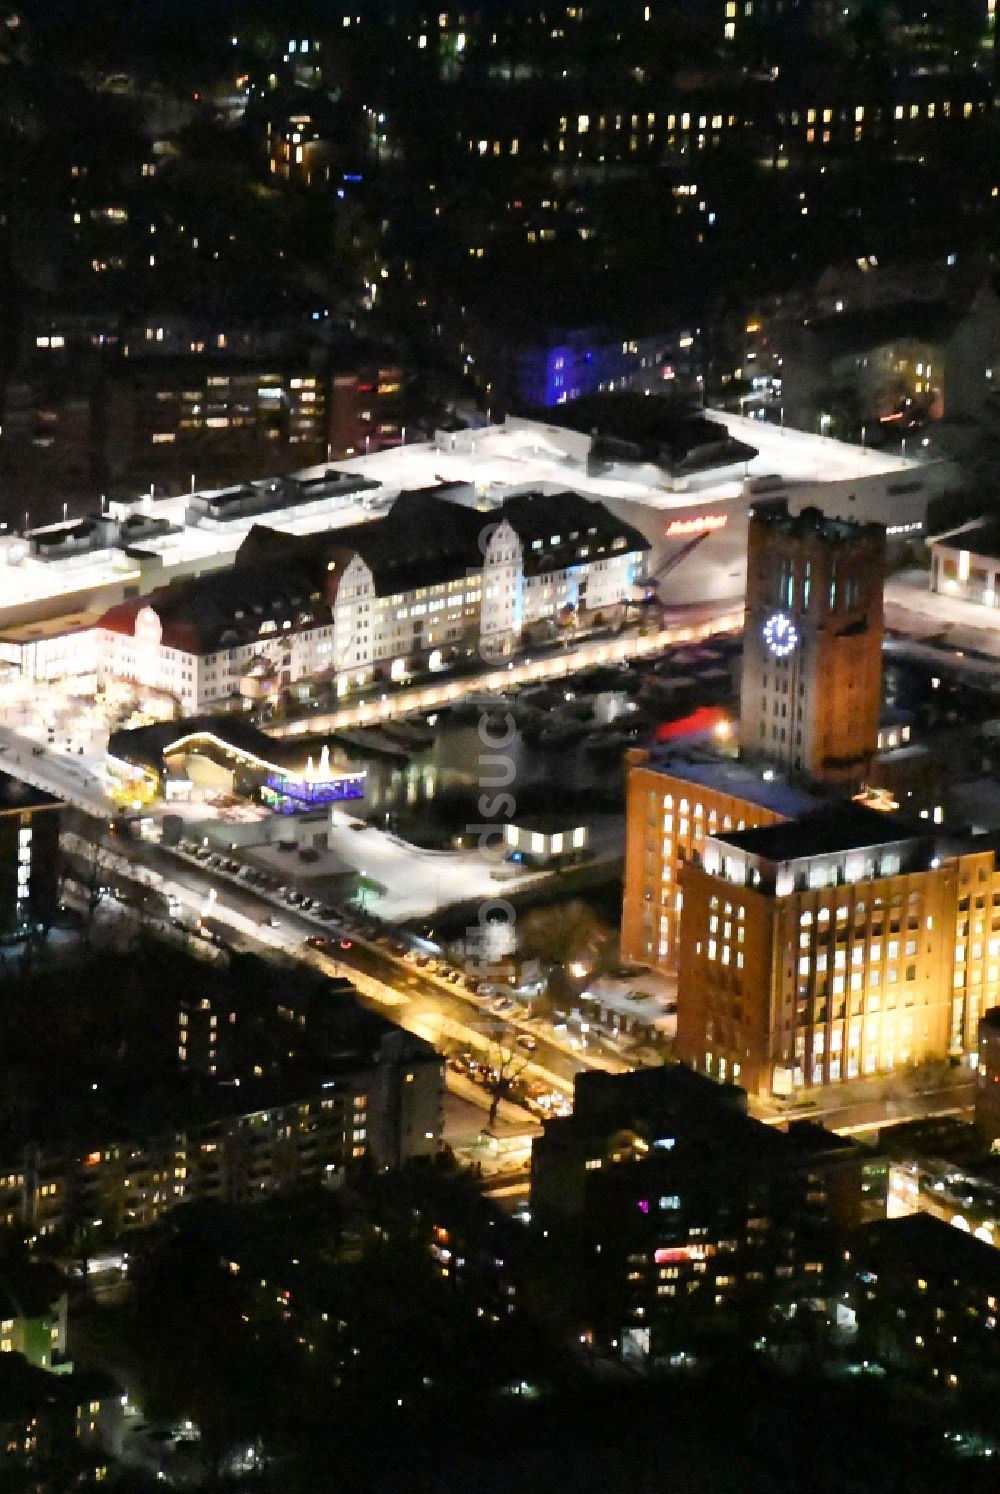 Nachtluftbild Berlin - Nachtluftbild von Ullsteinhaus und Einkaufszentrum Tempelhofer Hafen am Tempelhofer Damm in Berlin